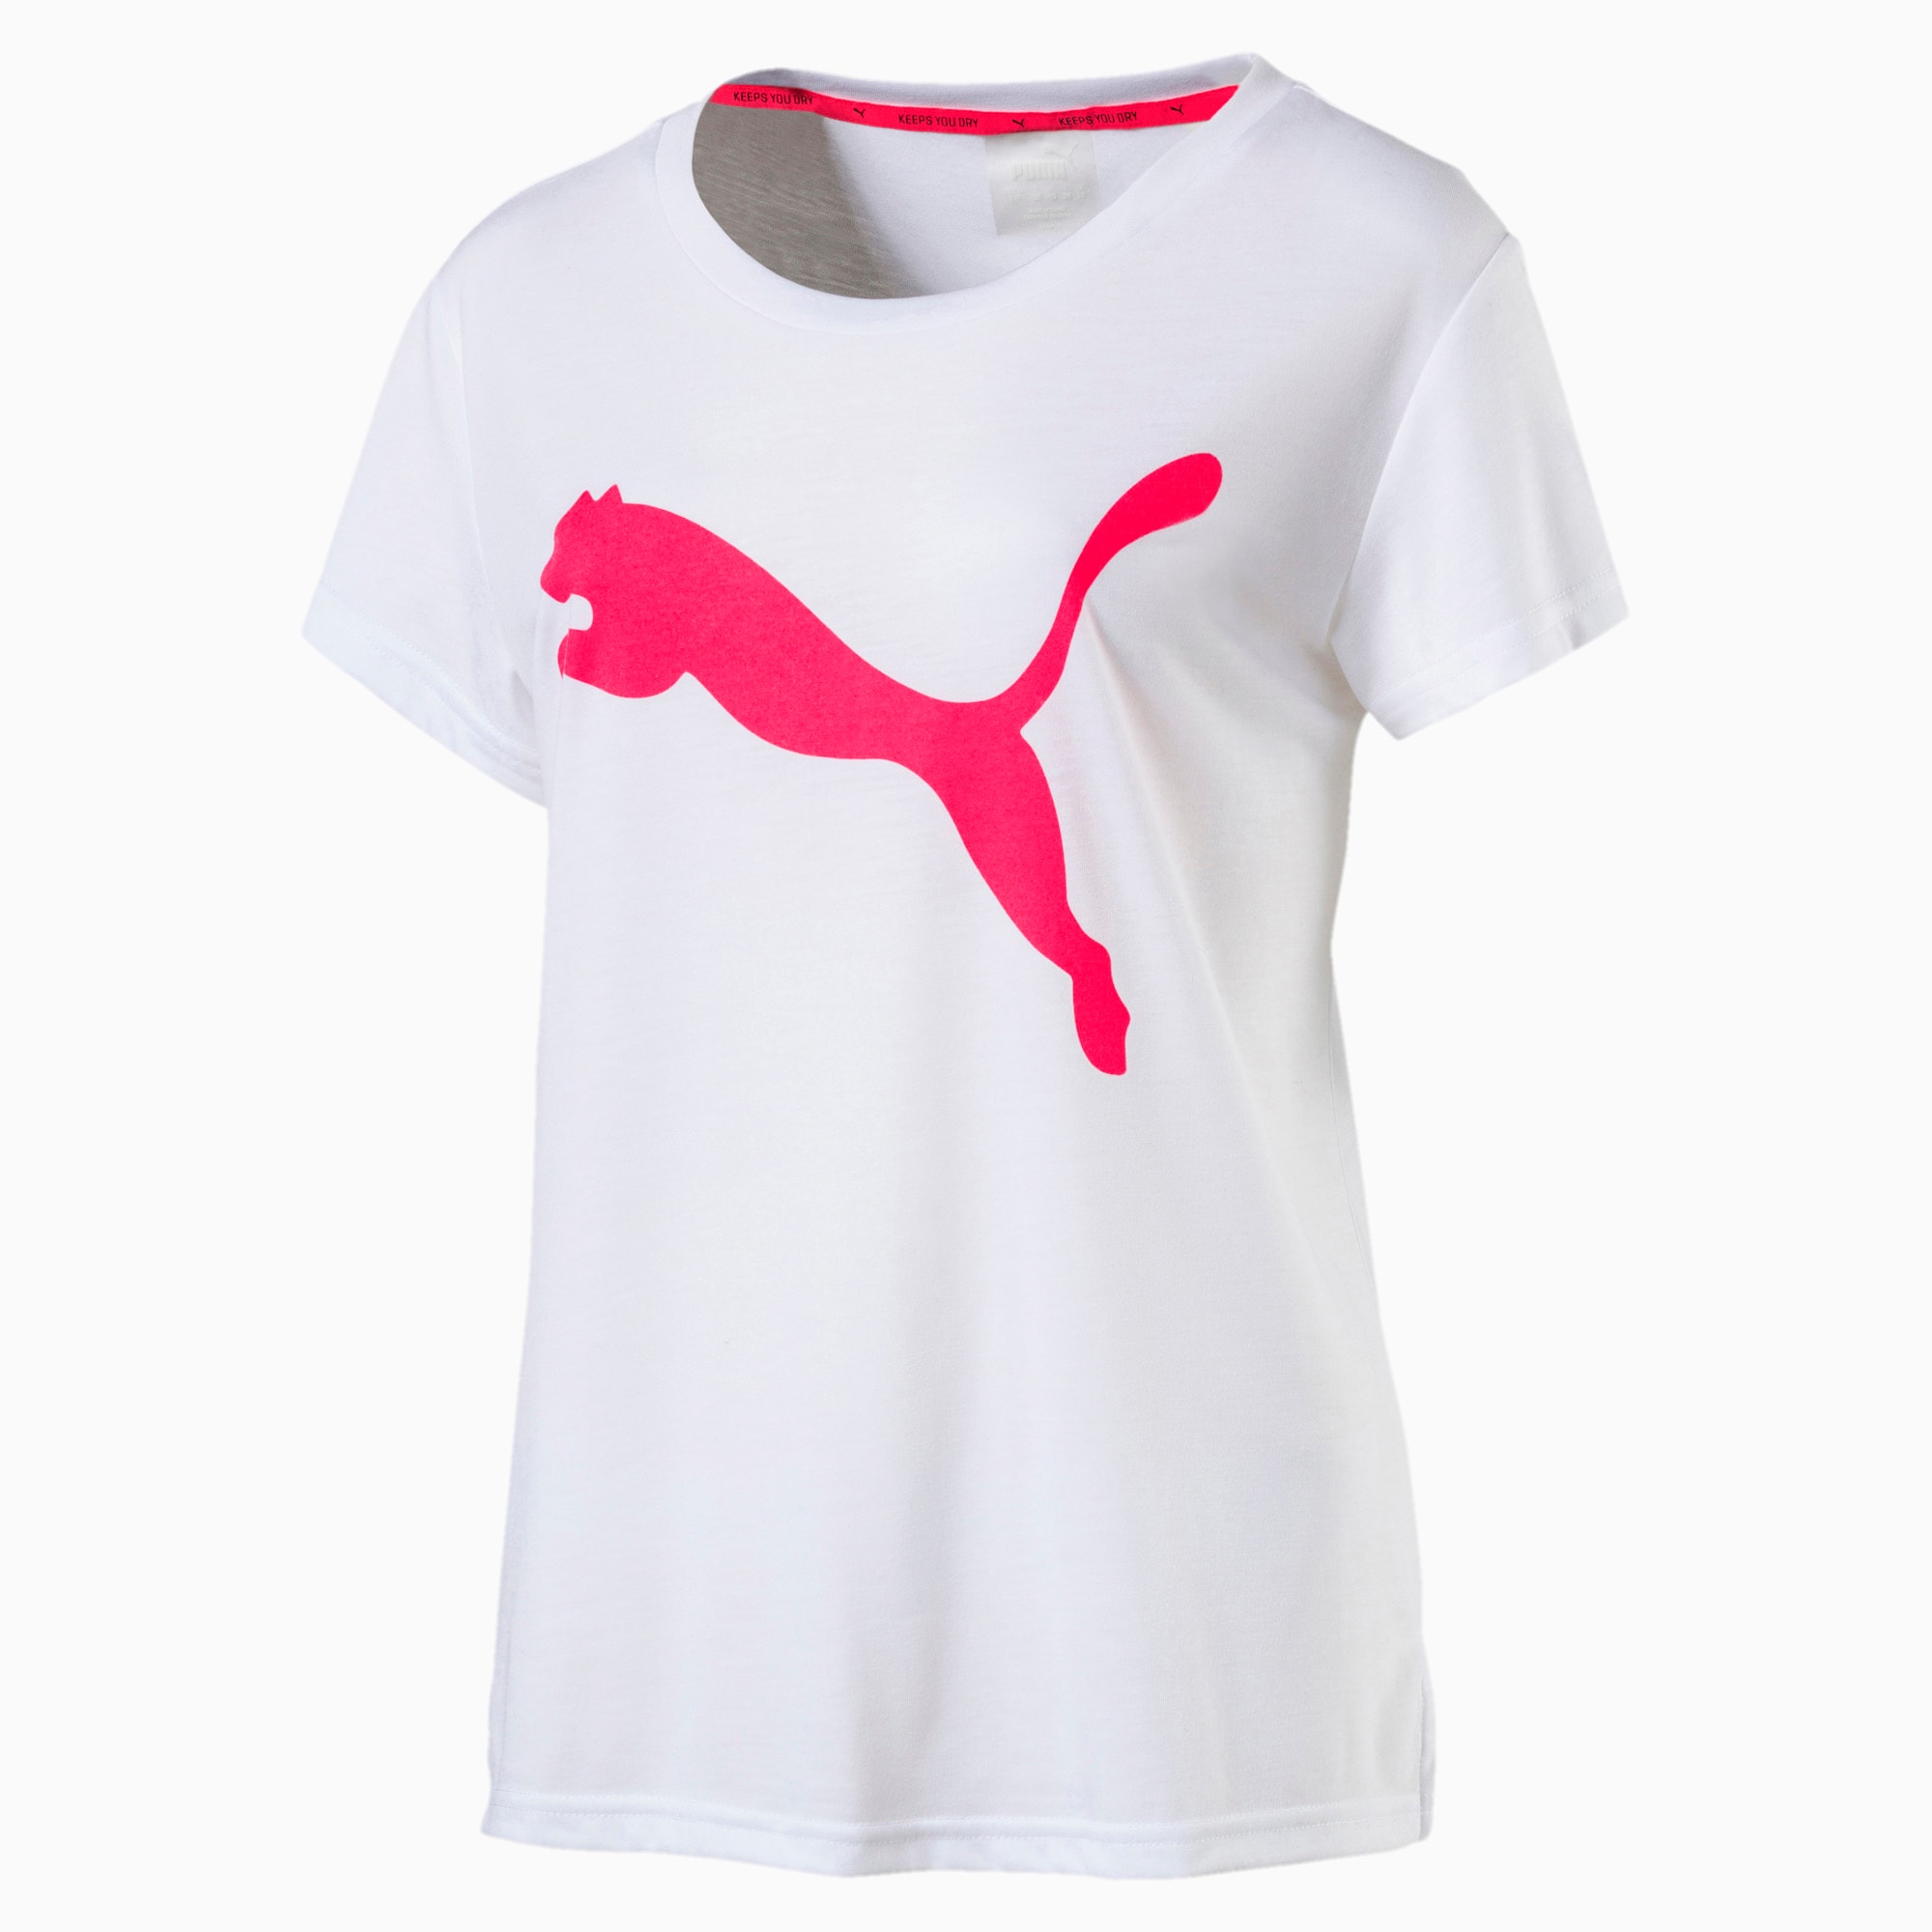 puma urban sports t shirt ladies